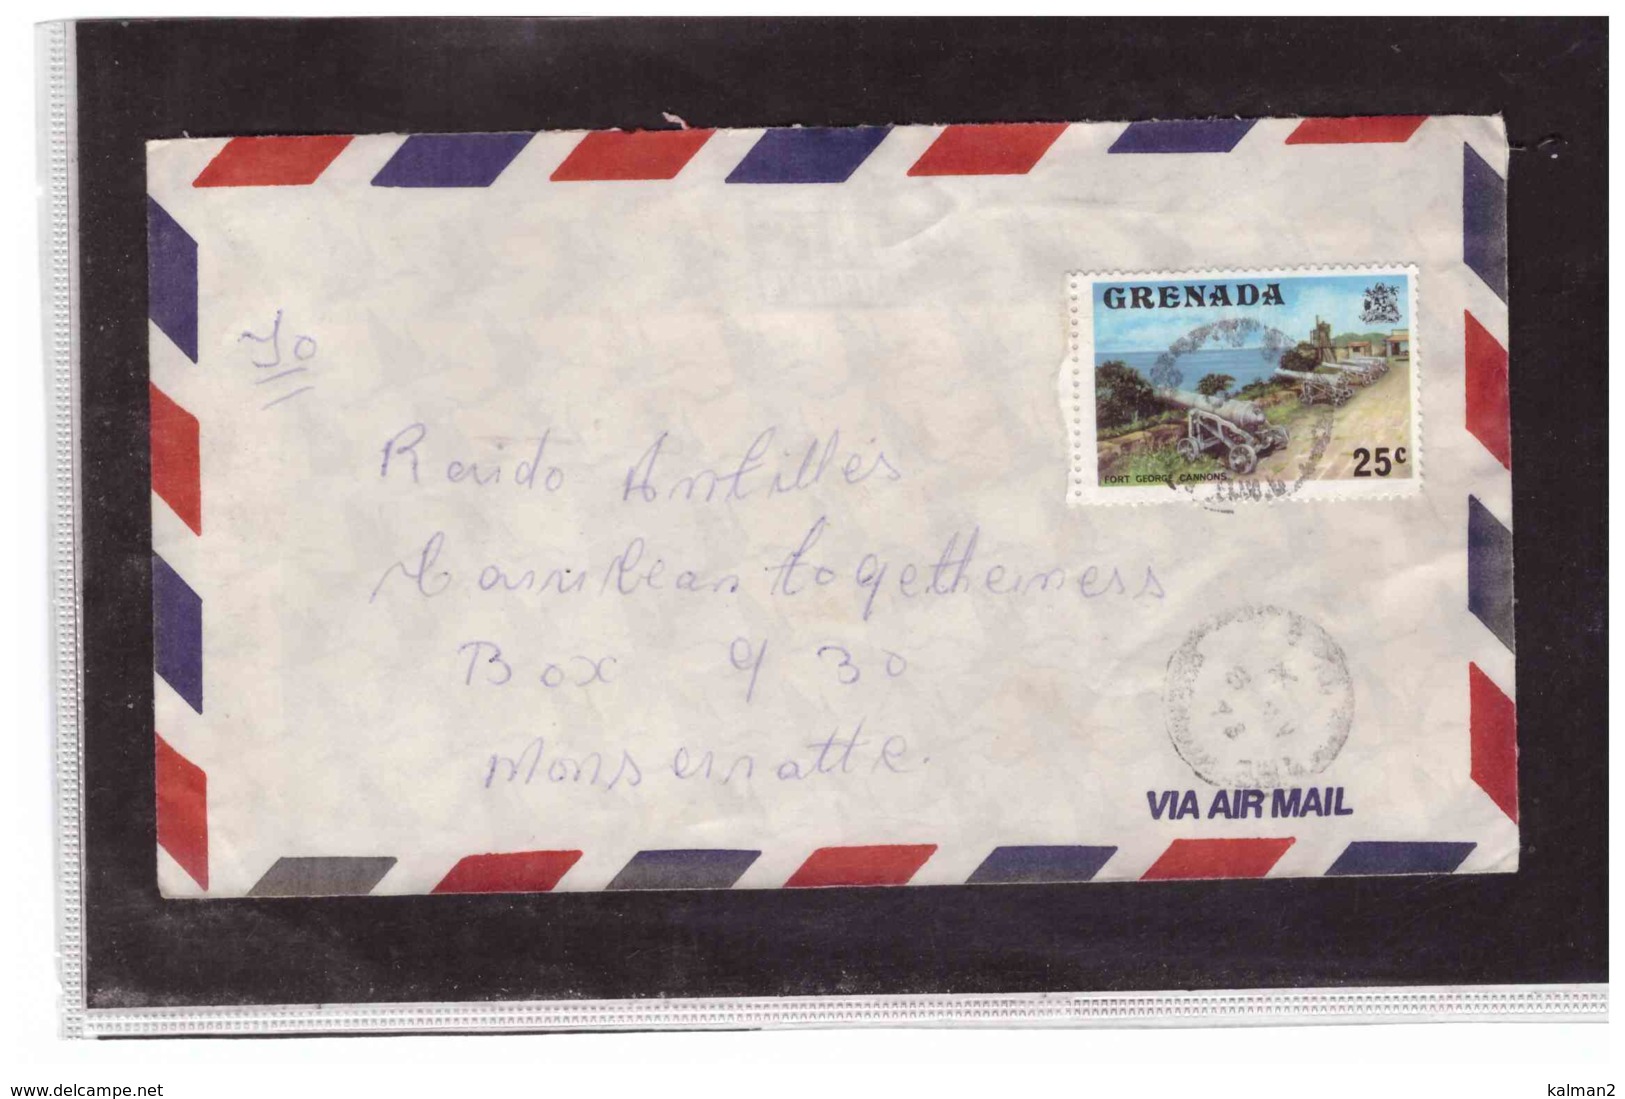 TEM10178   -   GRENADA     /   AIR MAIL COVER  TO MONTSERRAT - Grenada (1974-...)